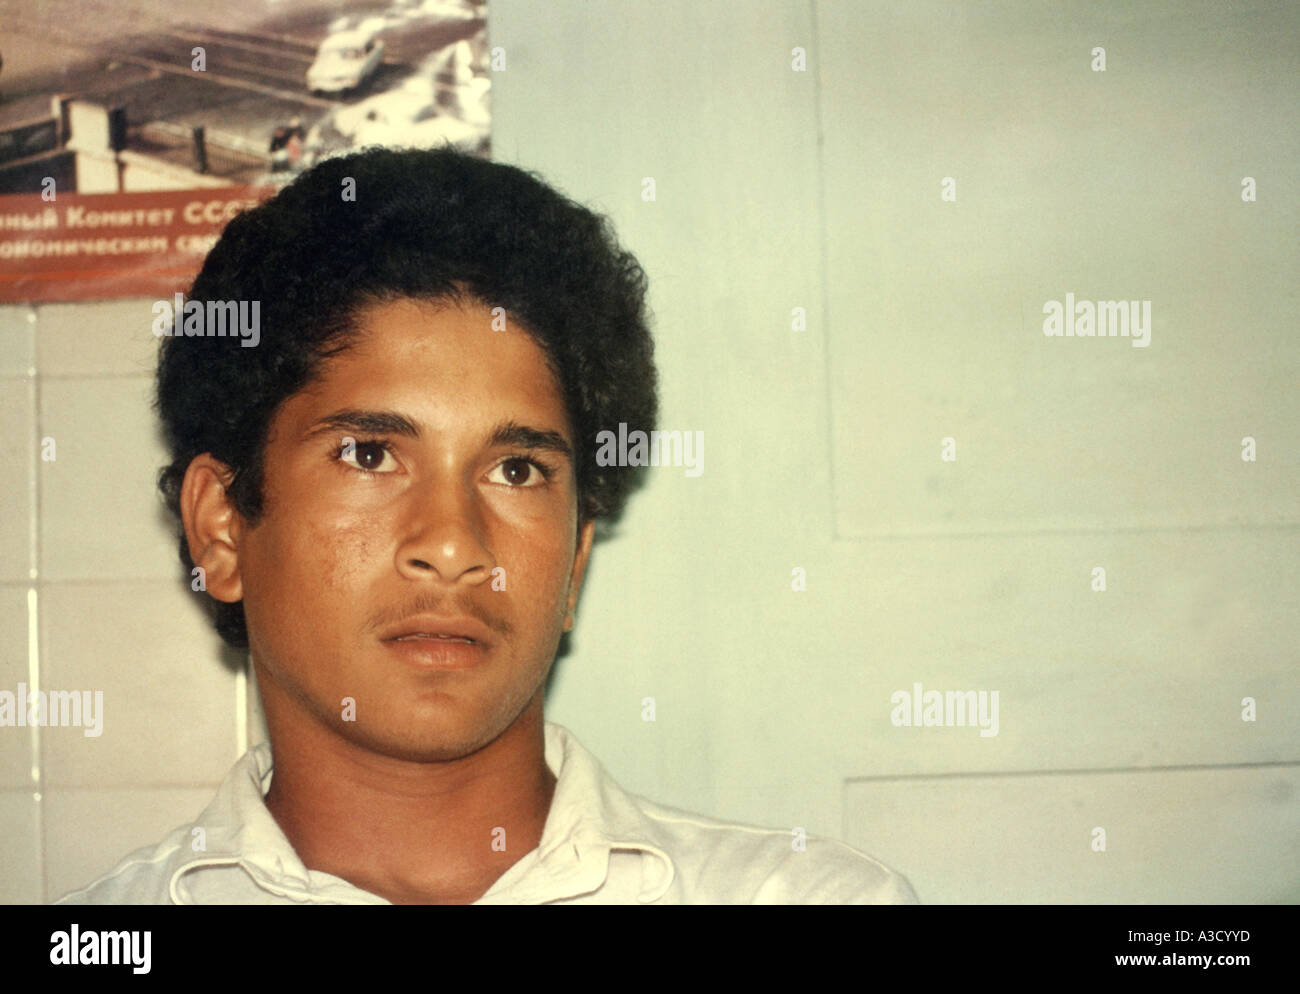 Der indische Cricketspieler Sachin Tendulkar 1987 Indien - keine Modellveröffentlichung - nur für redaktionelle Zwecke Stockfoto